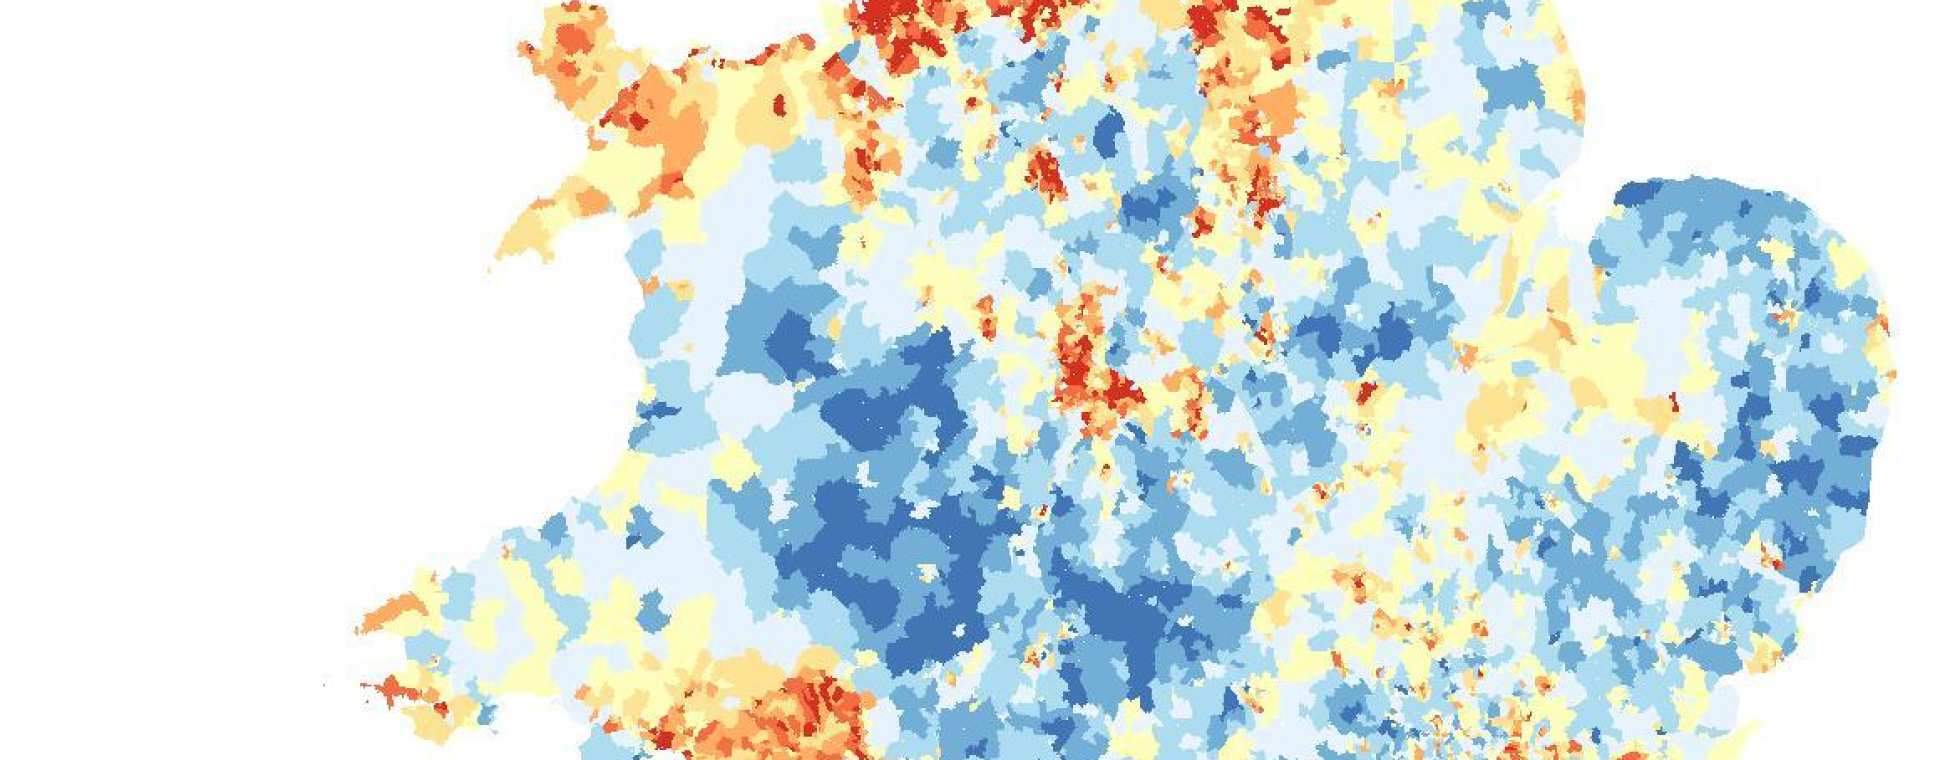 A heatmap of disease across the UK